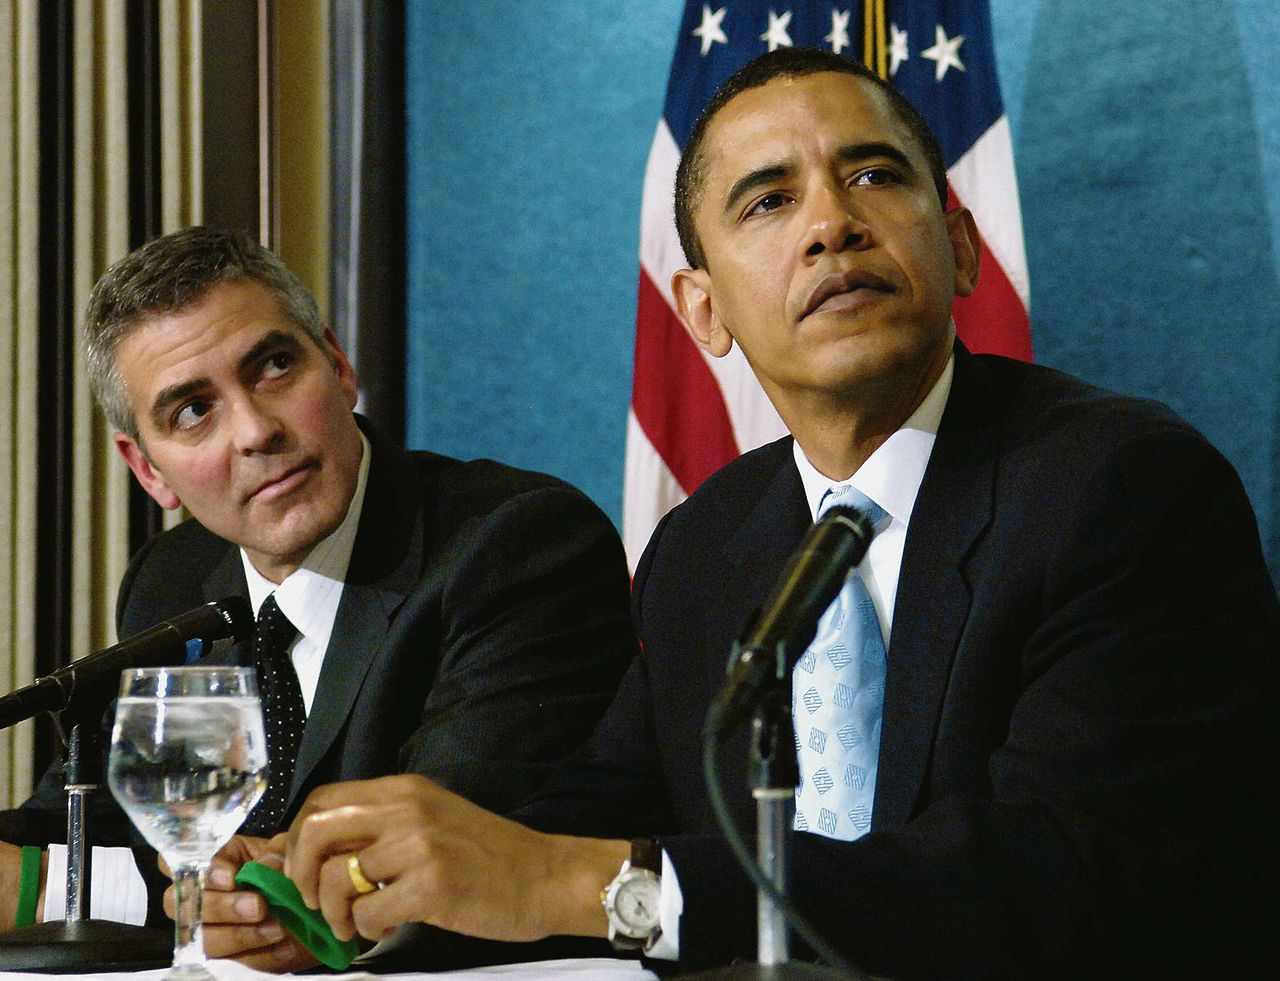 Foto waar streetartist Shepard Fairey het Obama-hoofd van leende voor zijn beroemde verkiezingsposter (zie rechtsboven).